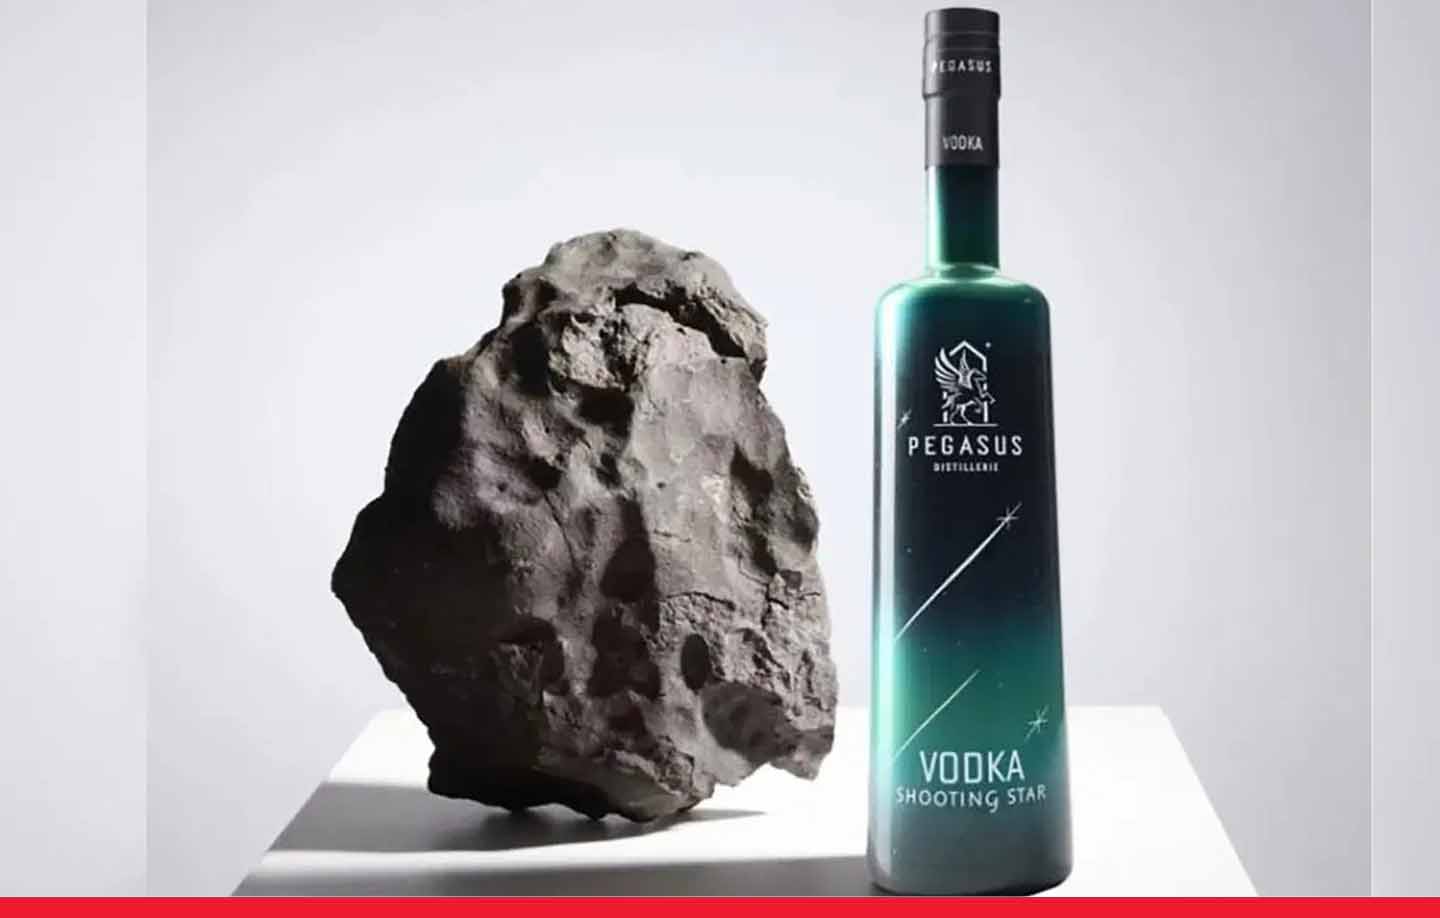 दुनिया की सबसे अनोखी शराब, जिसमें मिला है उल्कापिंड की चट्टानों का मिश्रण